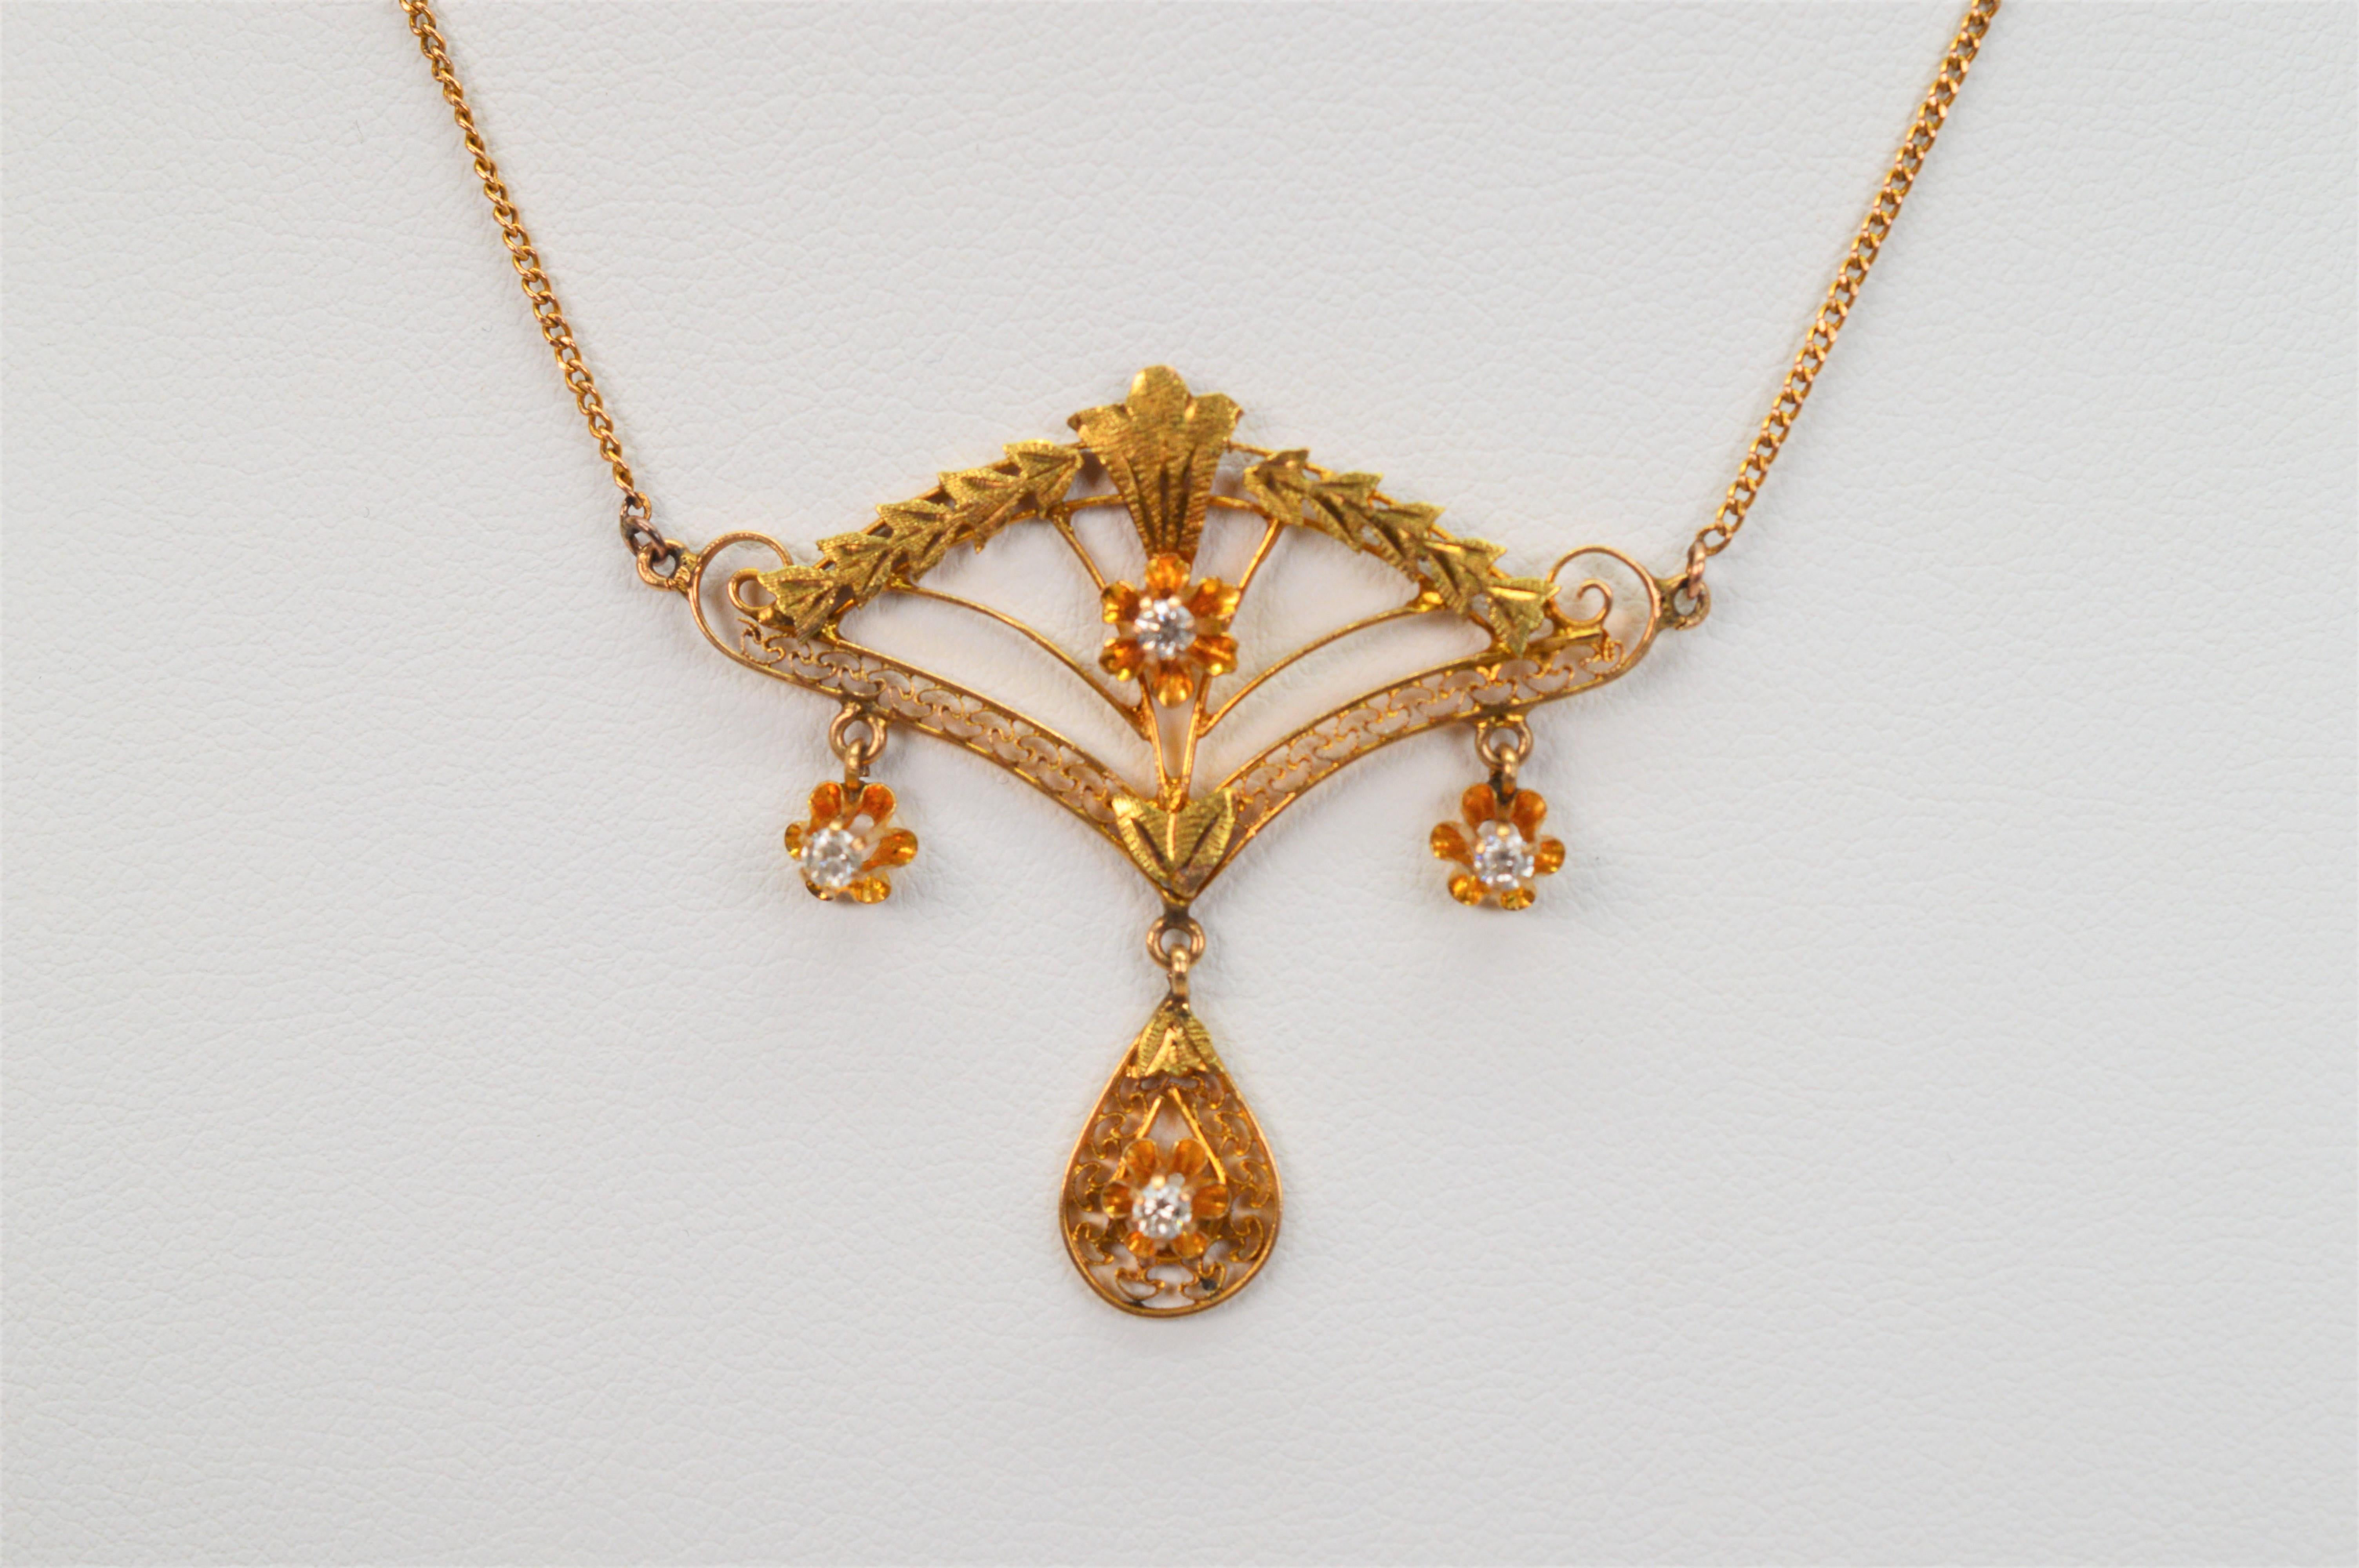 Une élégante parure ancienne de style édouardien est présentée sur cet exquis collier à pendentif. Ce pendentif filigrane en forme d'éventail avec breloque en forme de goutte d'eau est réalisé en or jaune 10 carats et rehaussé de quatre diamants